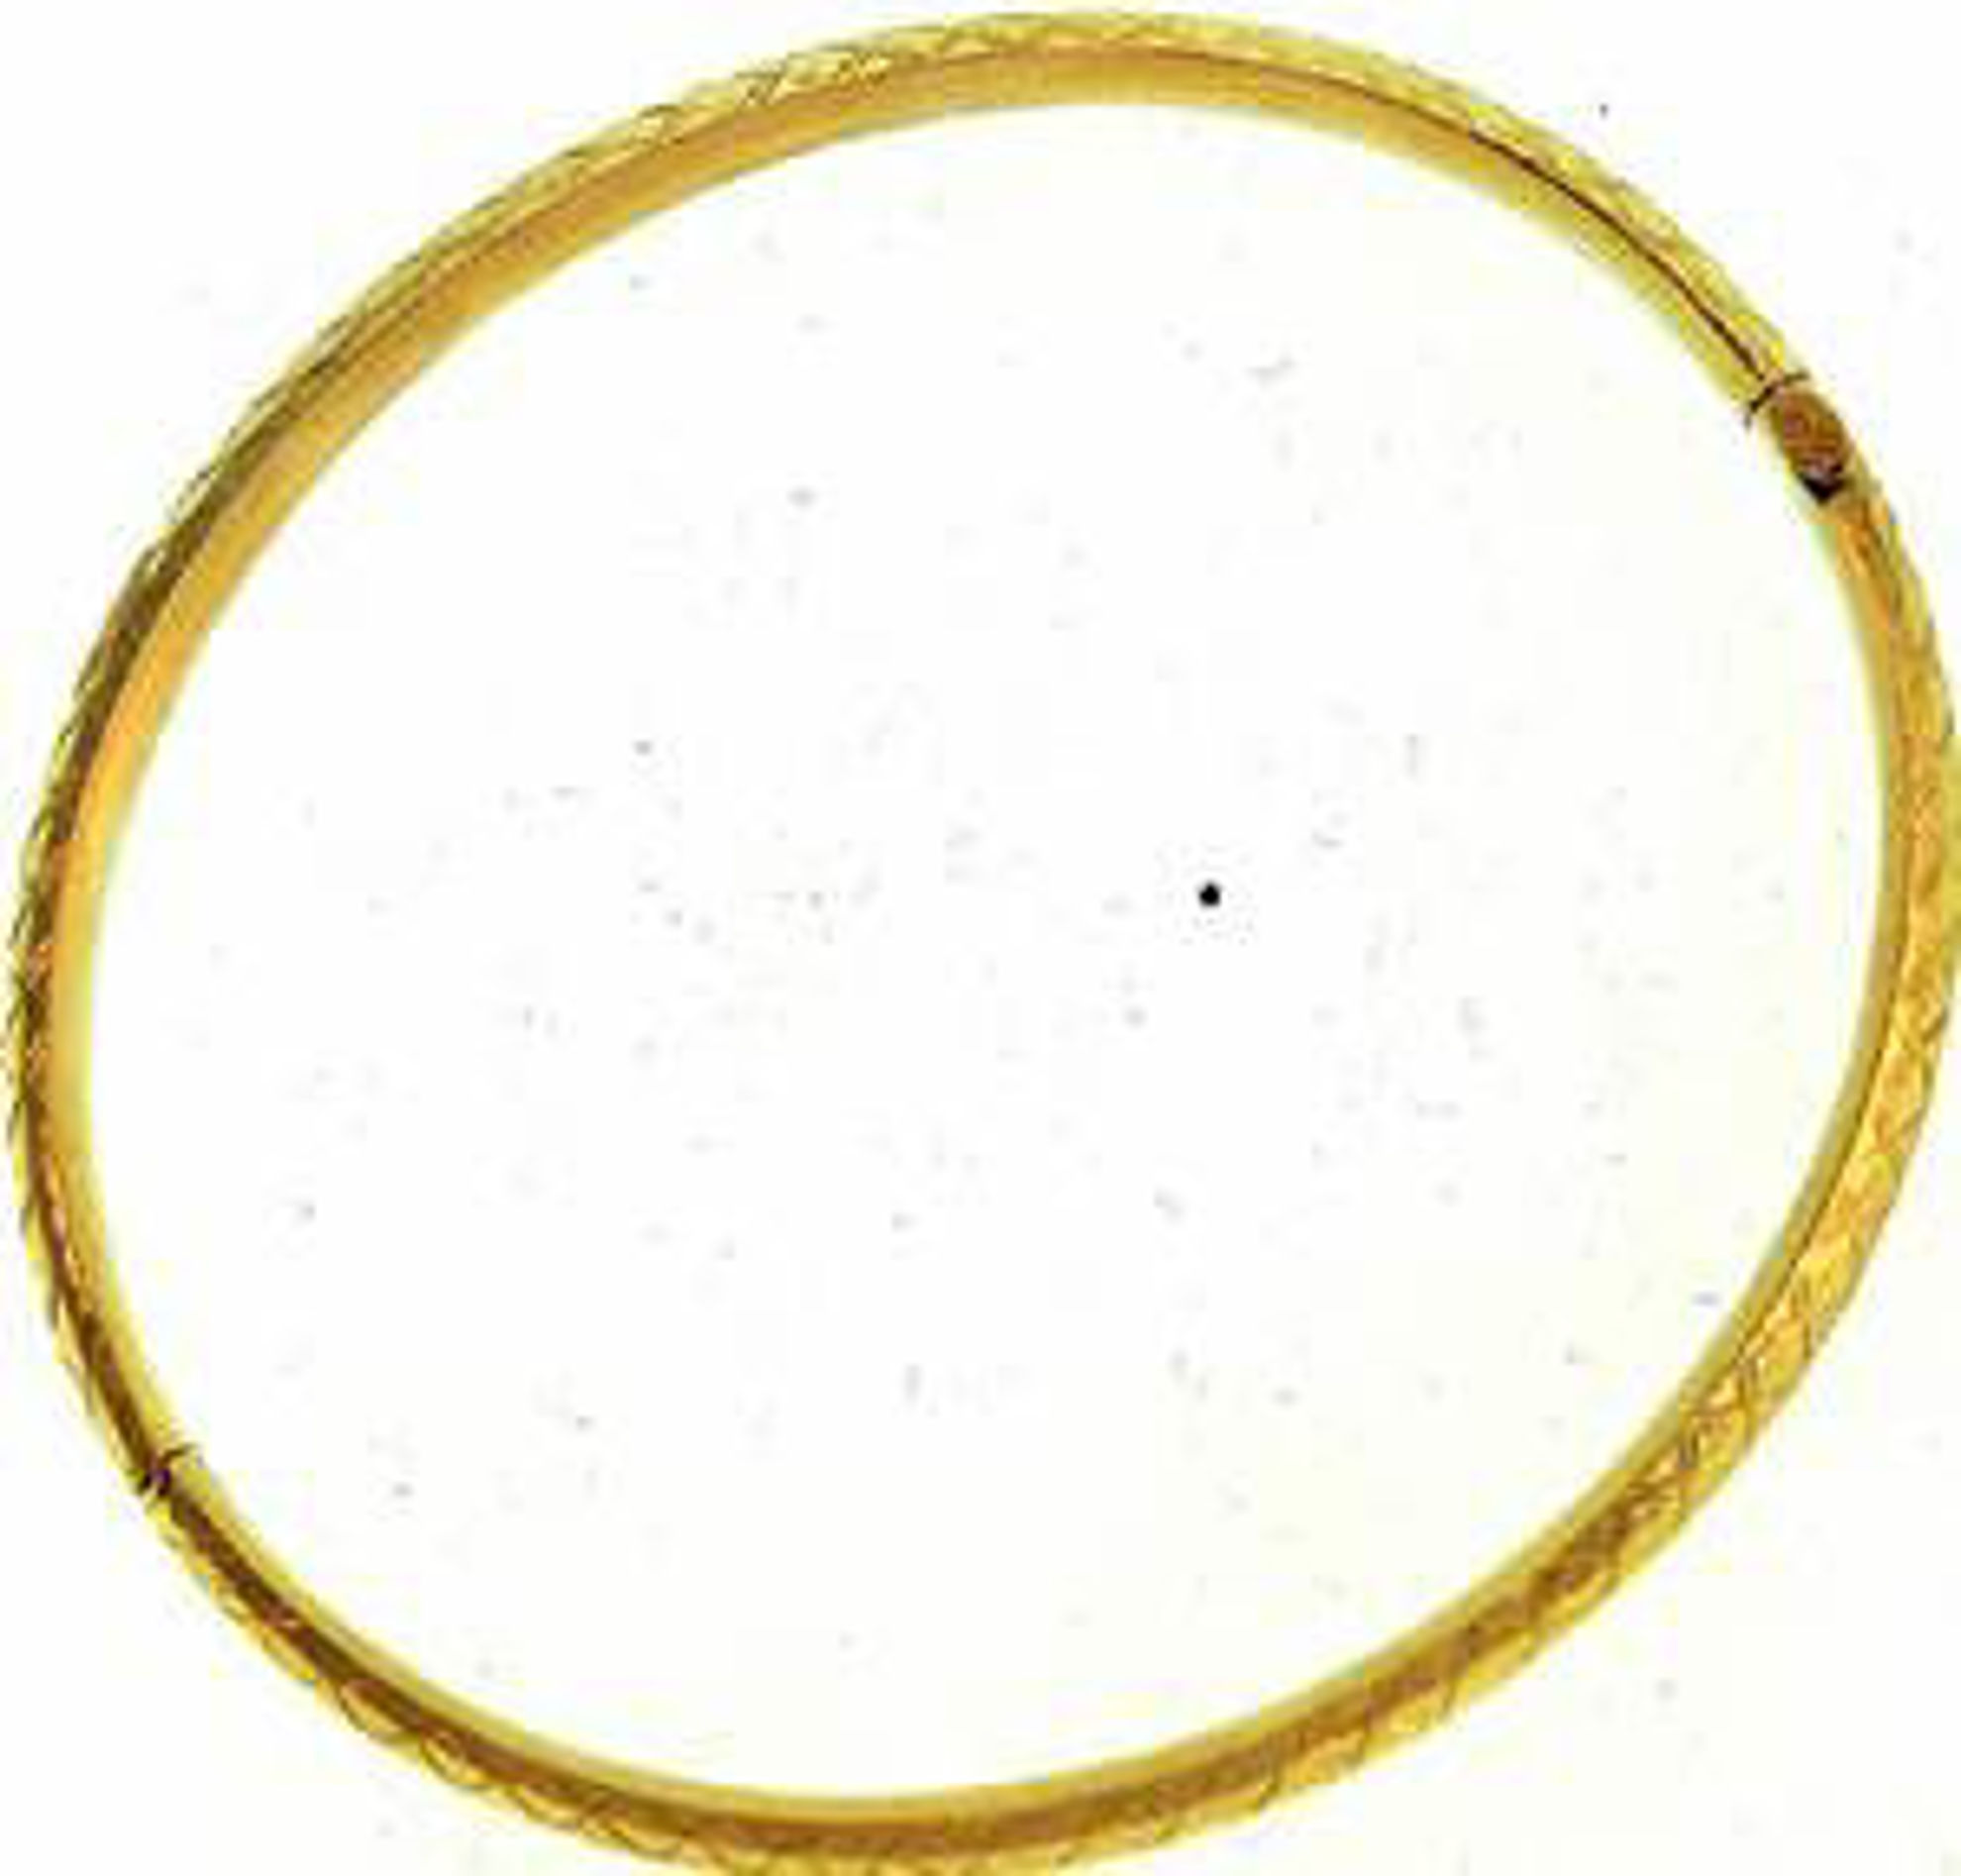 Picture of Bangle Bracelets 14kt-3.9 DWT, 6.1 Grams